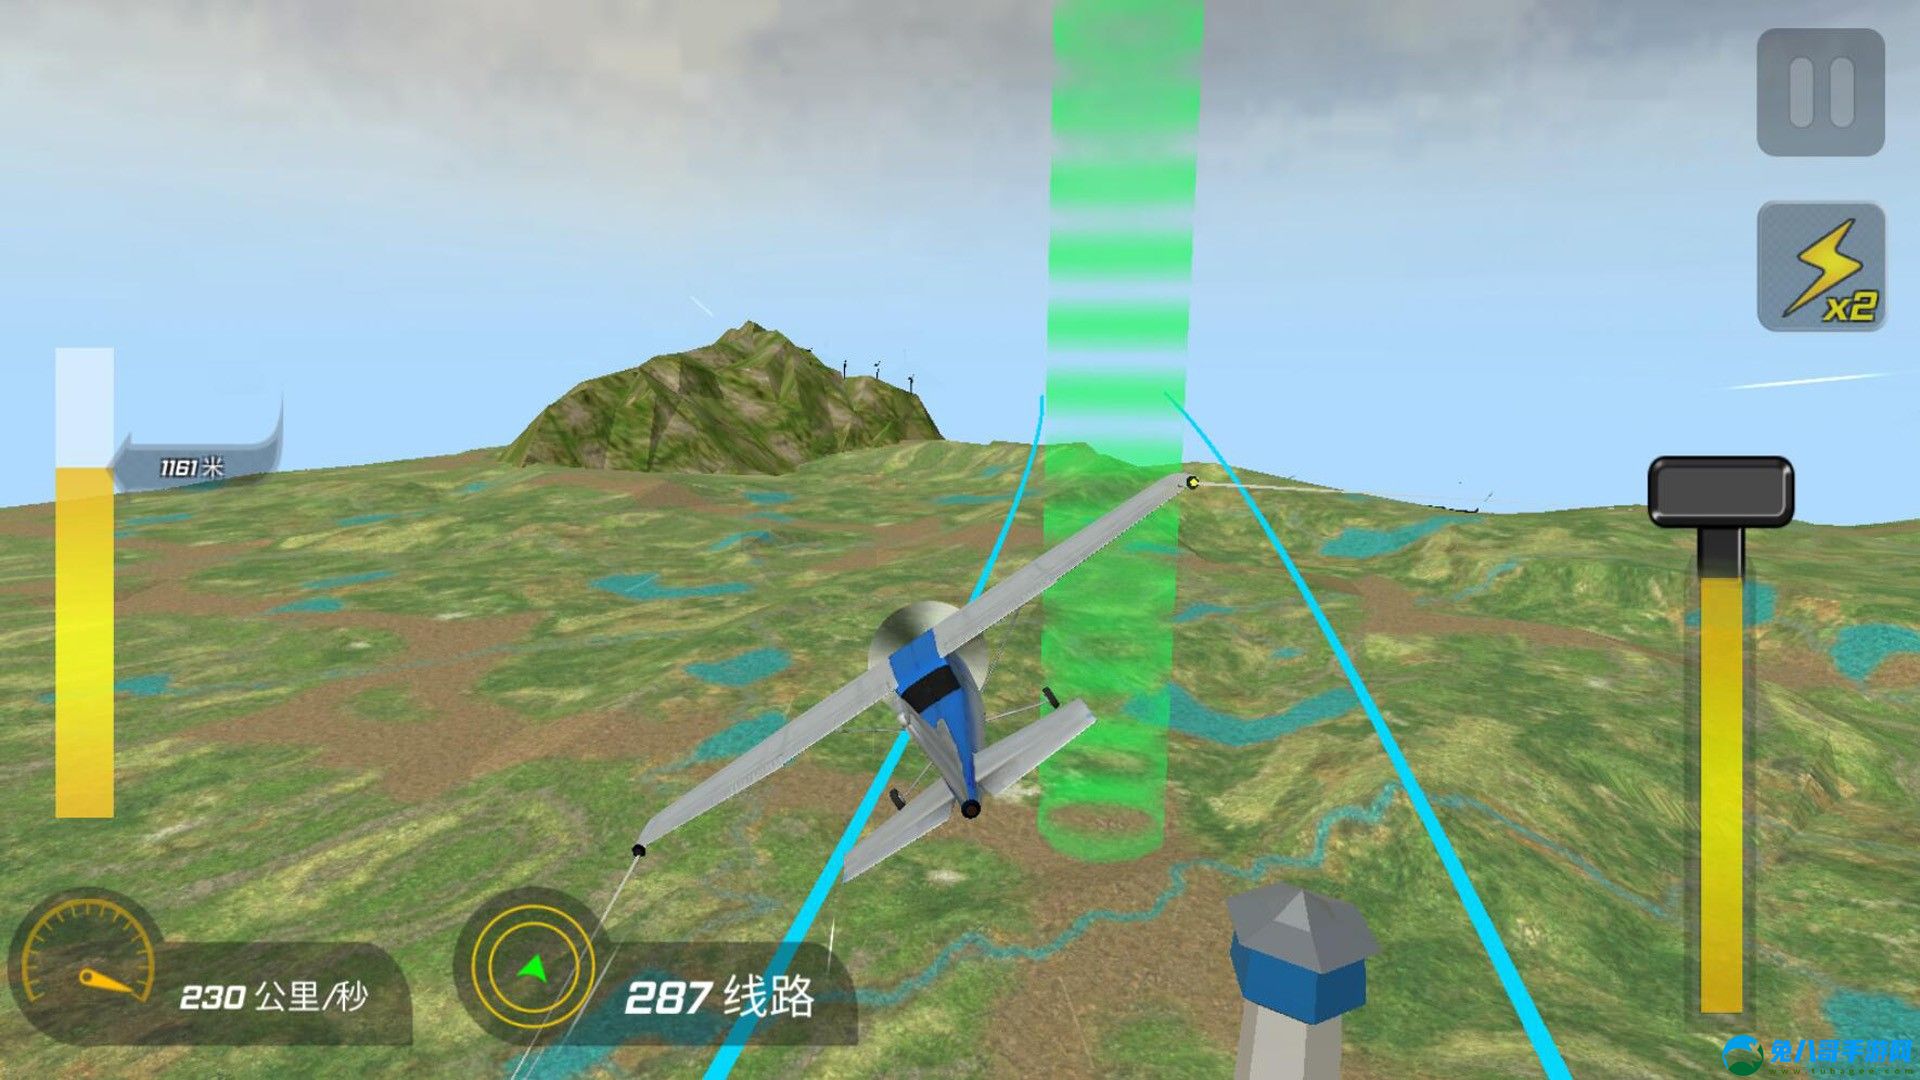 高空飞机模拟游戏安卓版 v300.1.0.3018